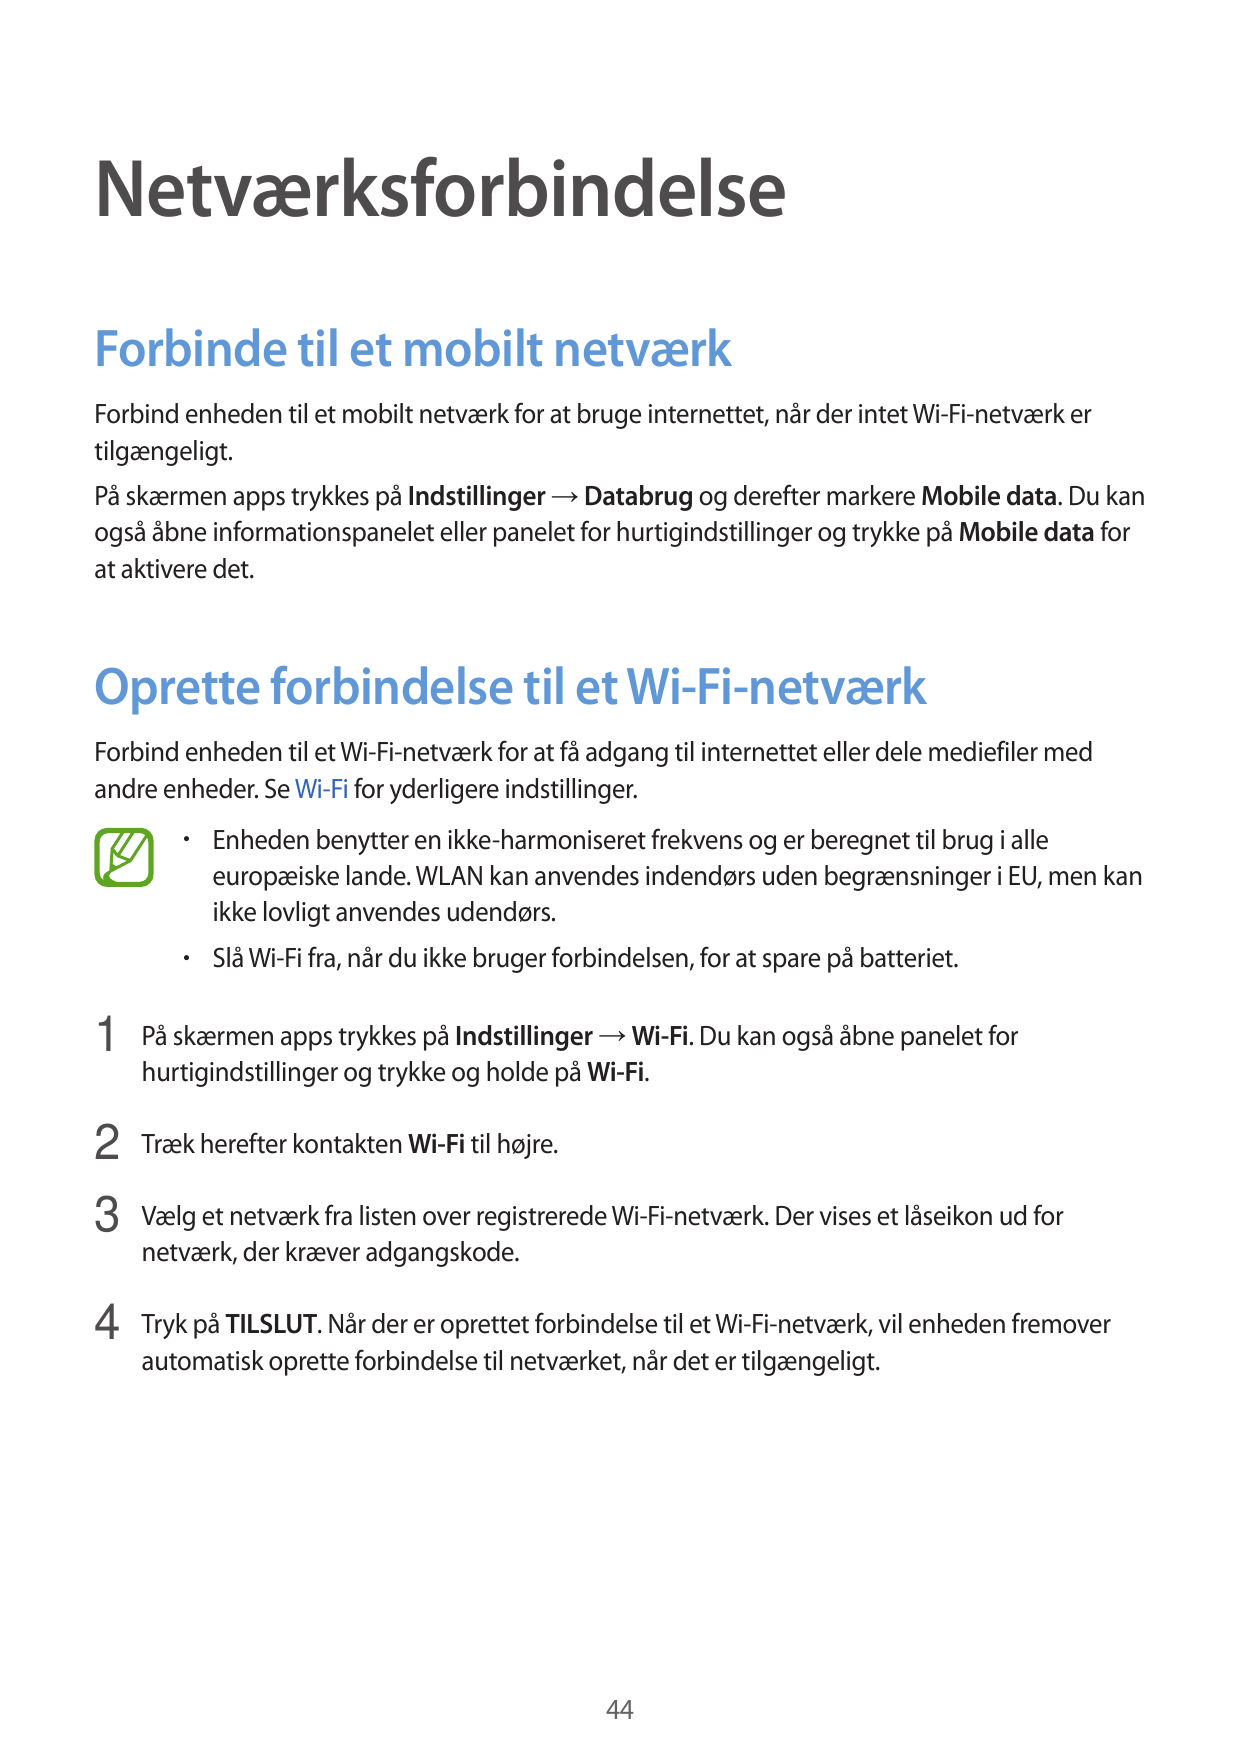 NetværksforbindelseForbinde til et mobilt netværkForbind enheden til et mobilt netværk for at bruge internettet, når der intet W